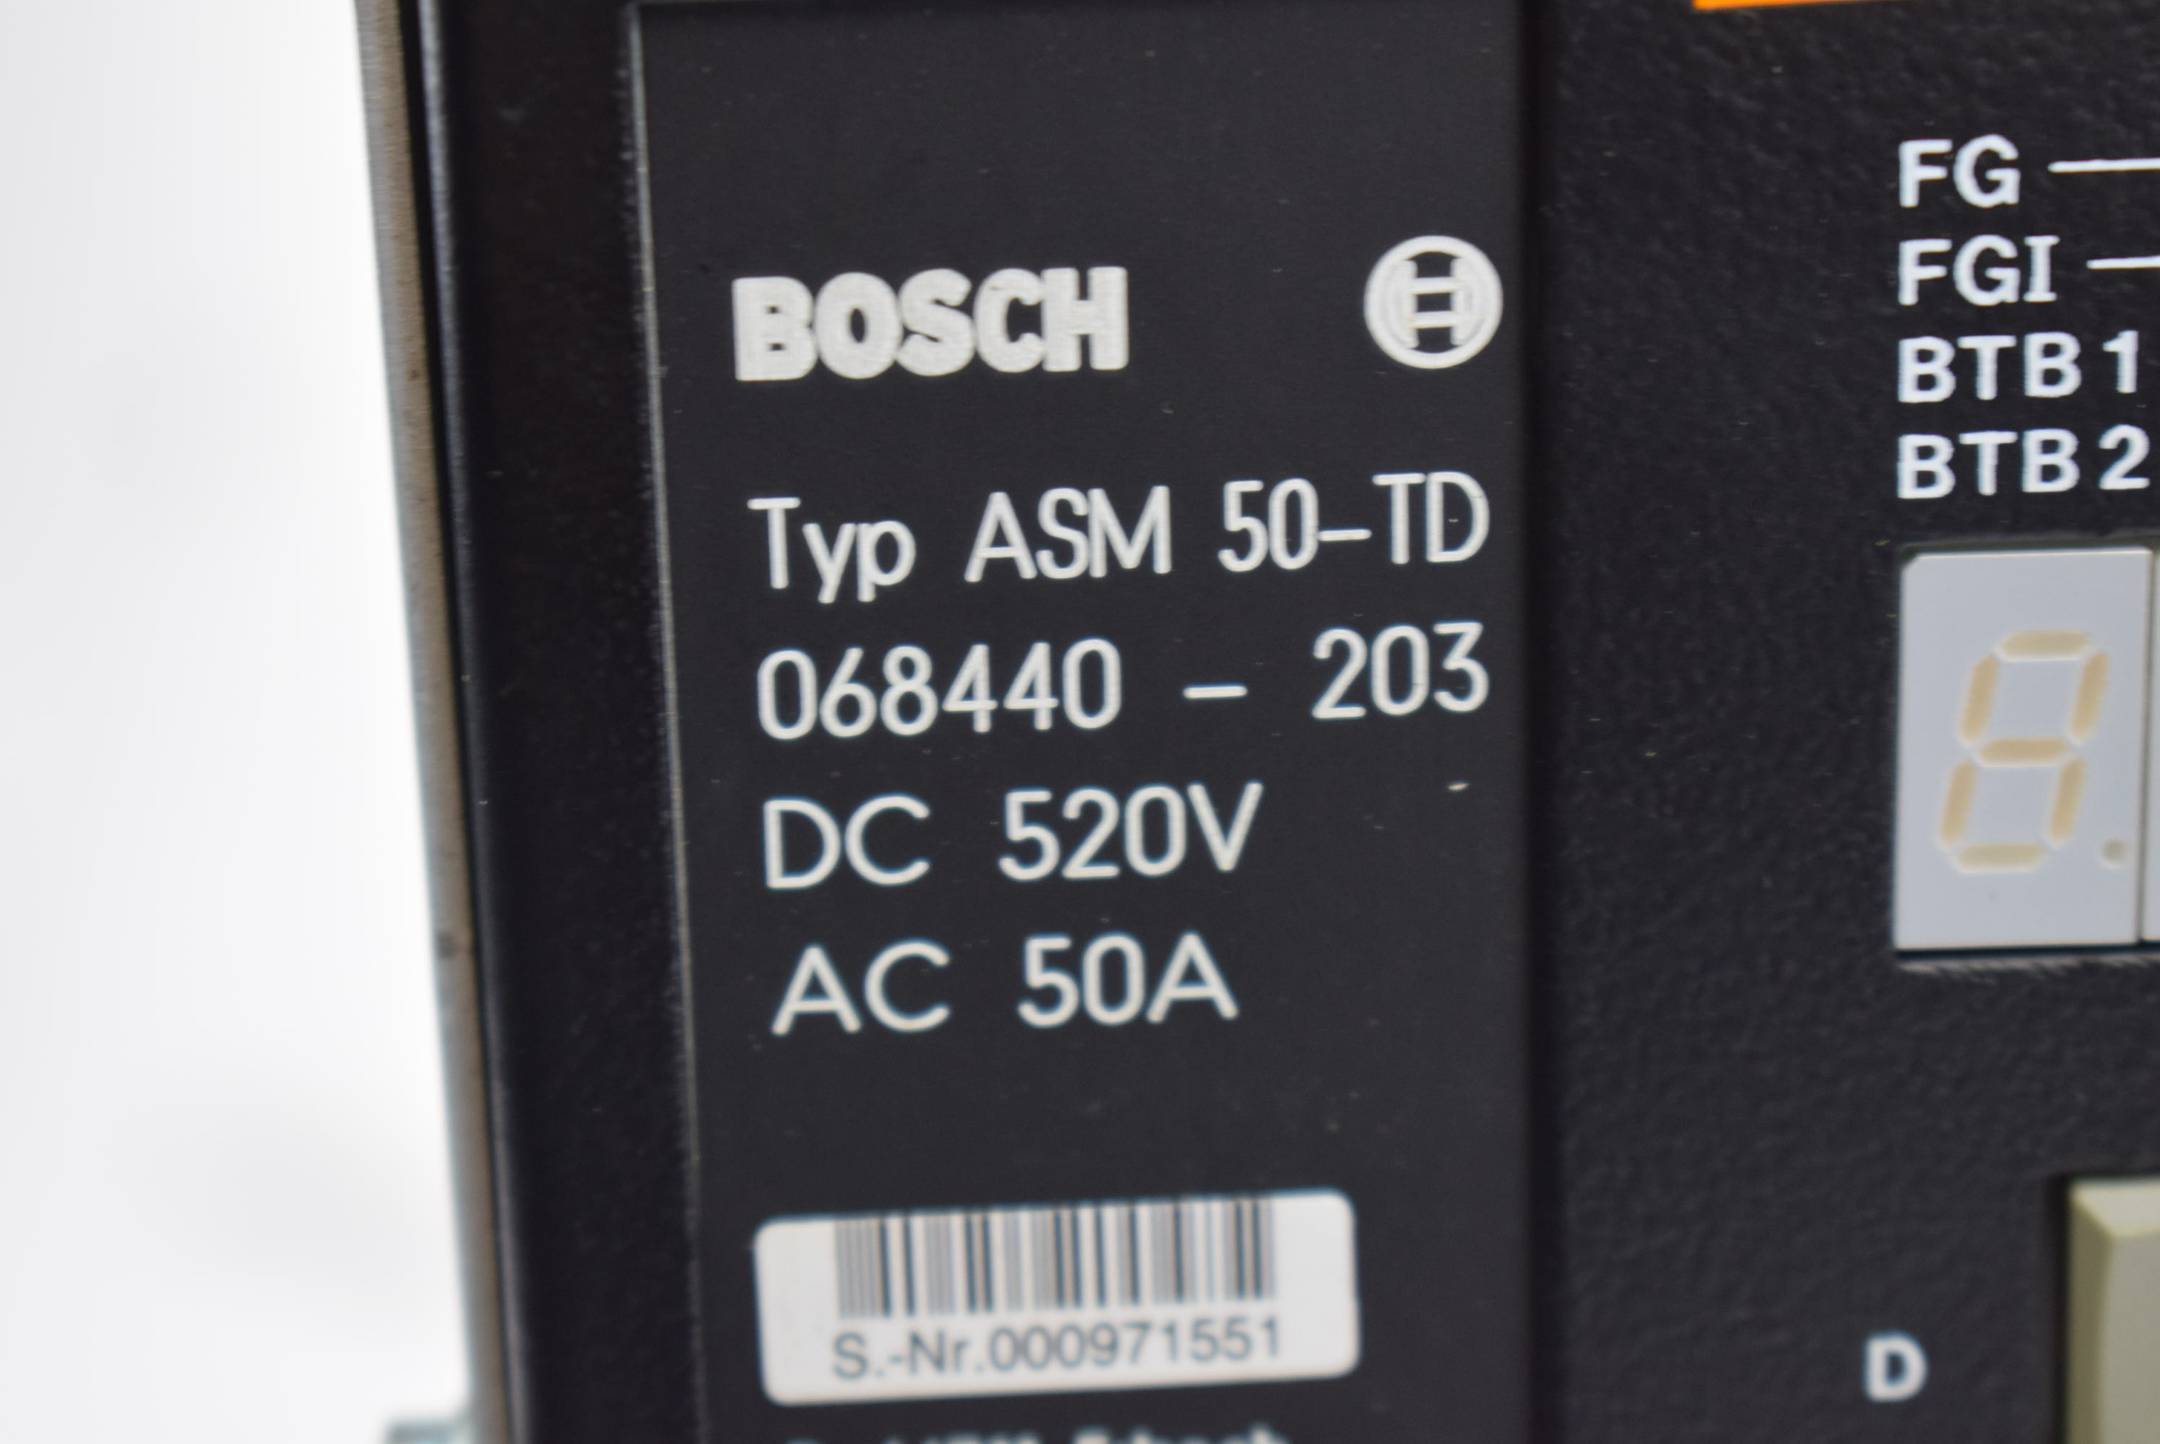 Bosch Servo Drive ASM 50-TD ( 068440-203 )